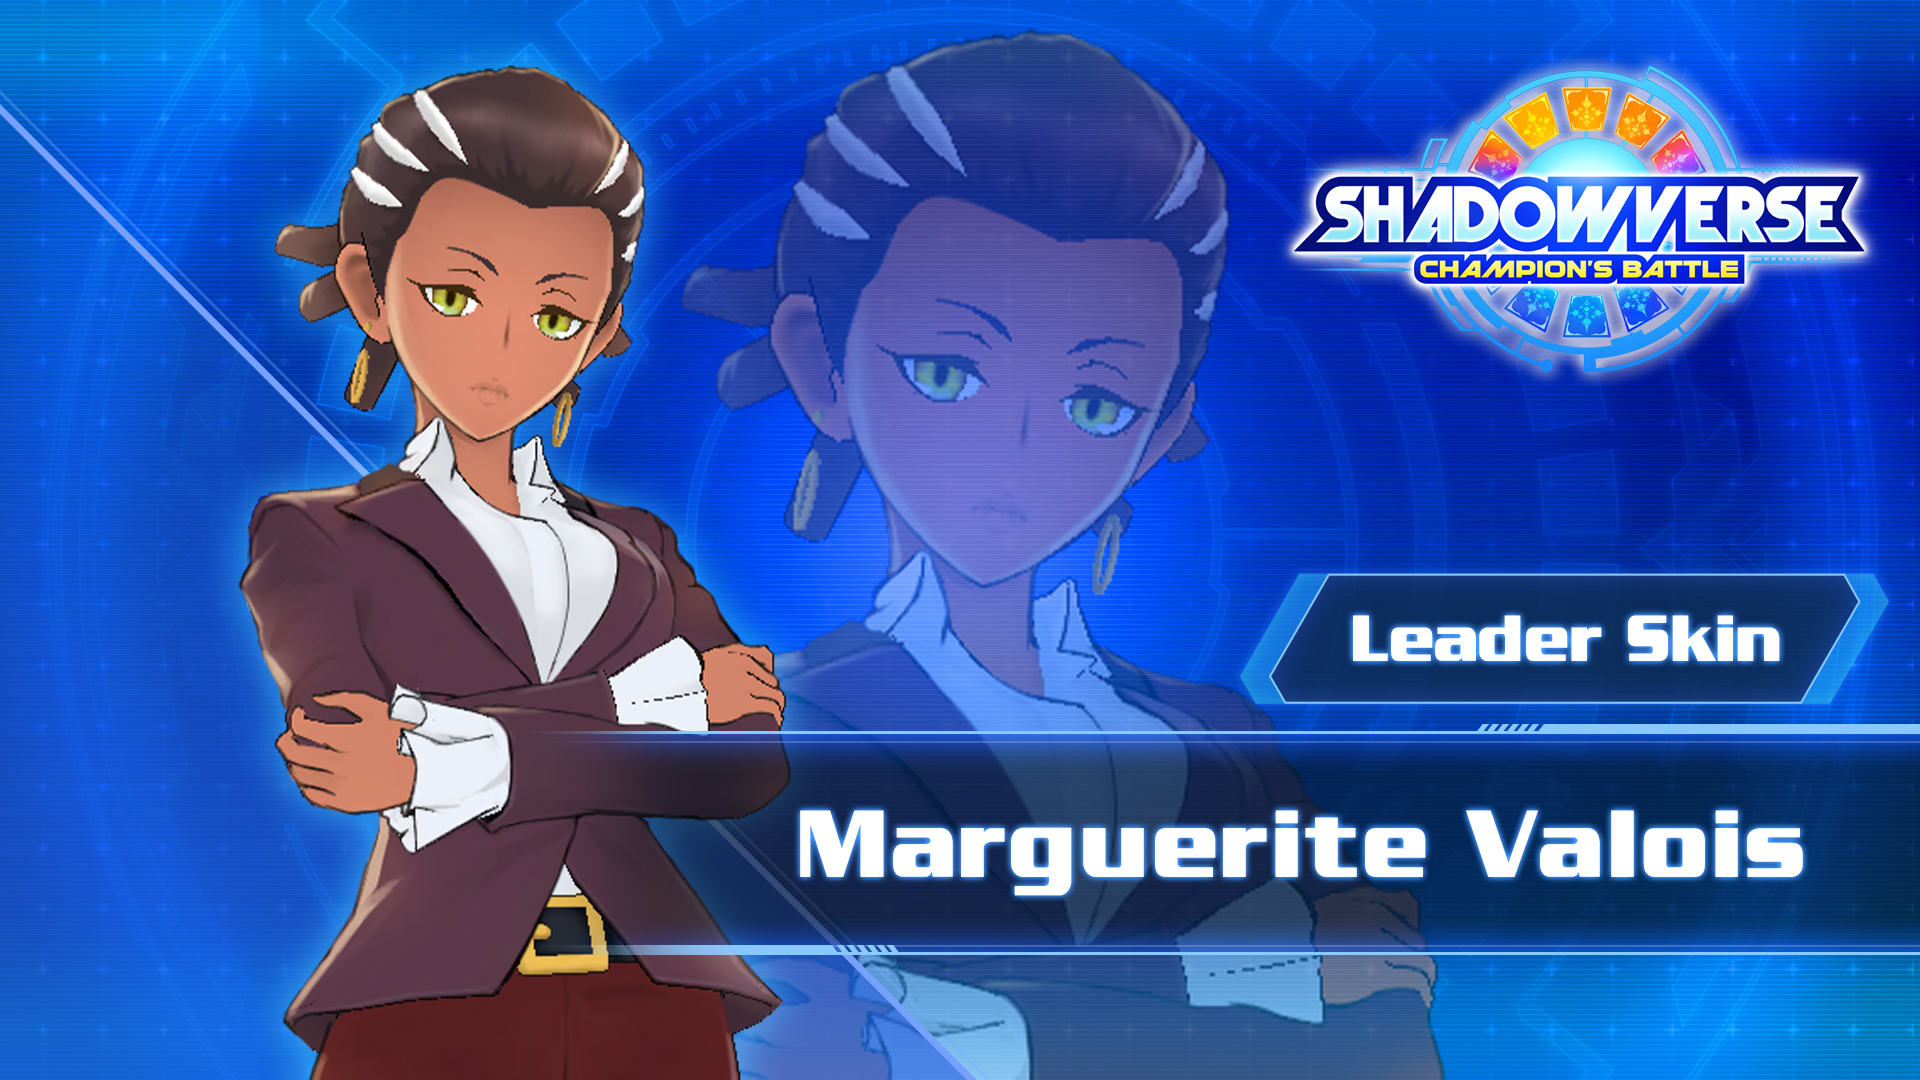 Leader Skin: "Marguerite Valois"